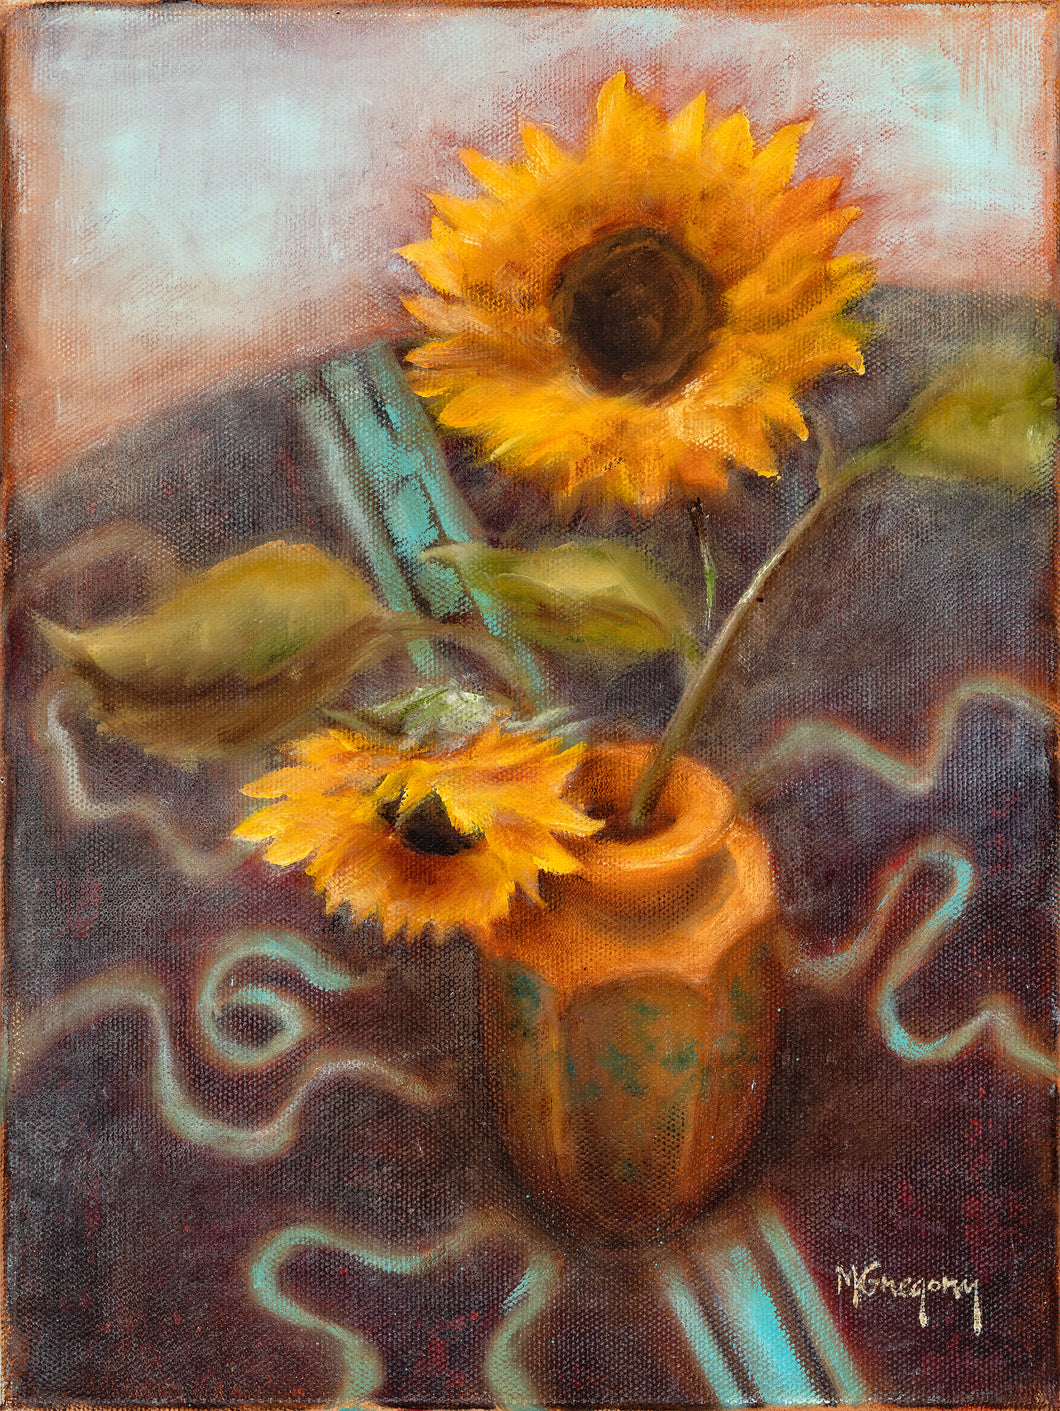 Sunflower in Vase